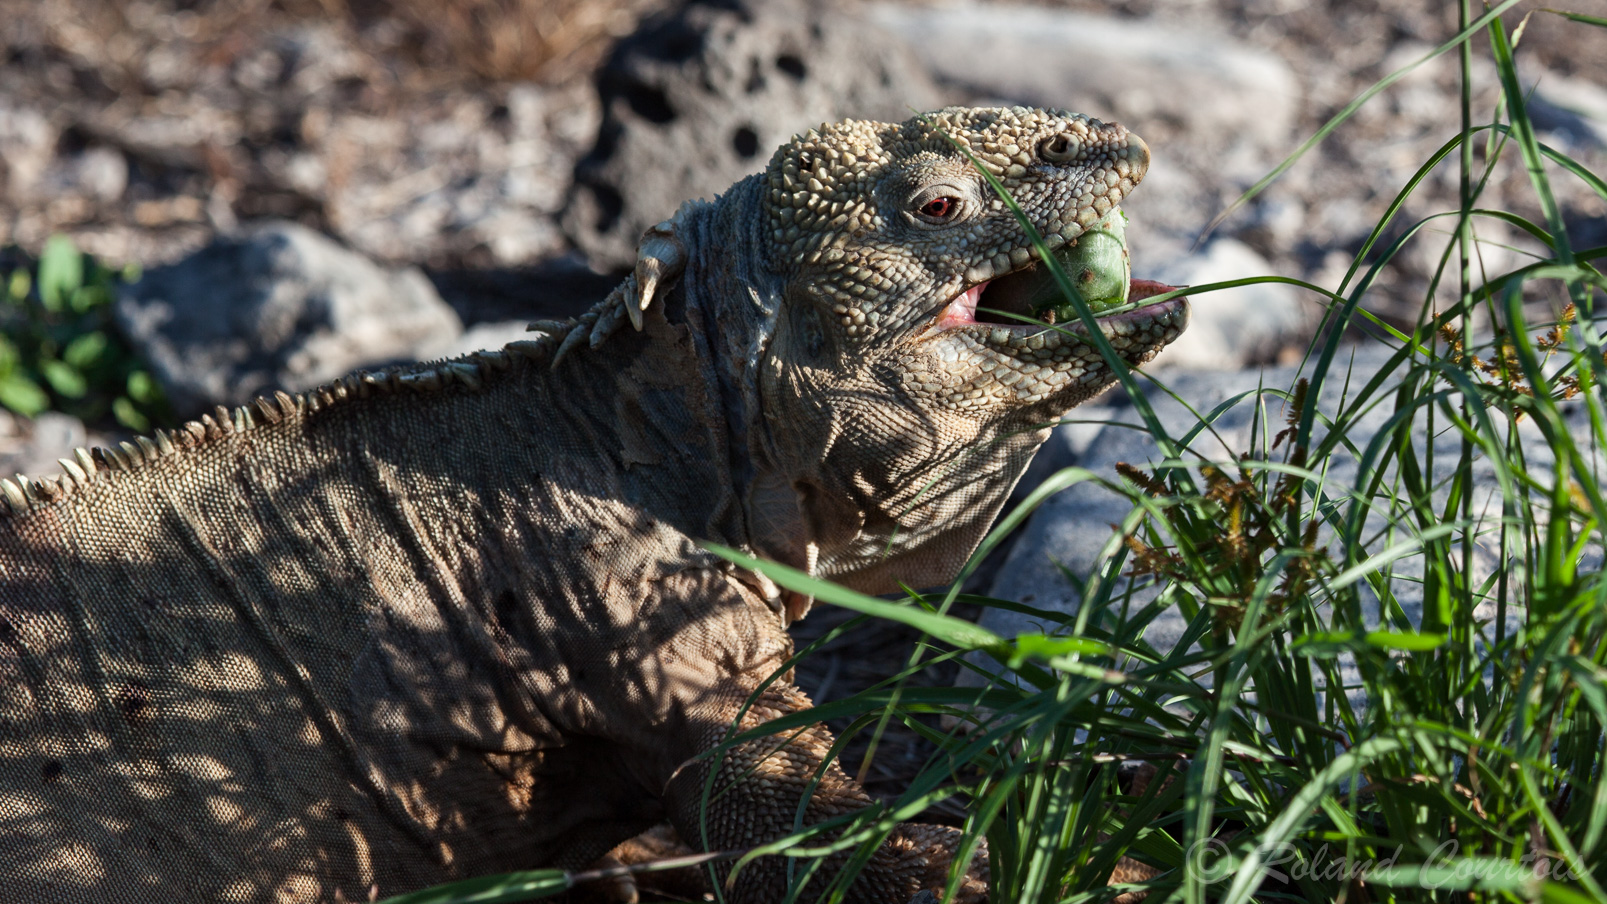 Iguane terrestre des Galapagos se nourrit des fruits du cactus. La crête dorsale est fortement prononcée. Les yeux sont bien rouges.